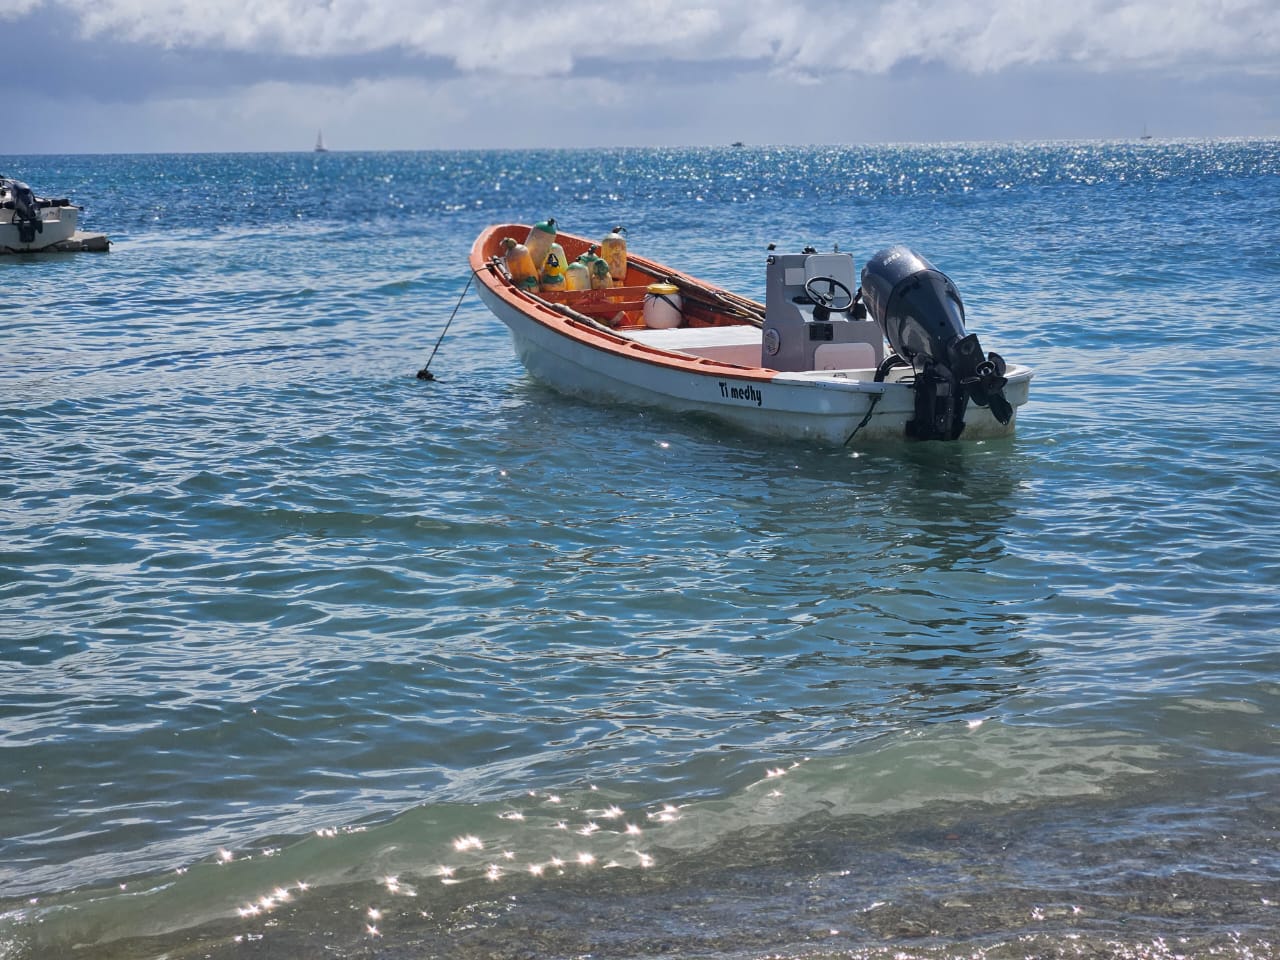     Pêcheur disparu : sa yole ramenée à Sainte-Luce, les recherches continuent

